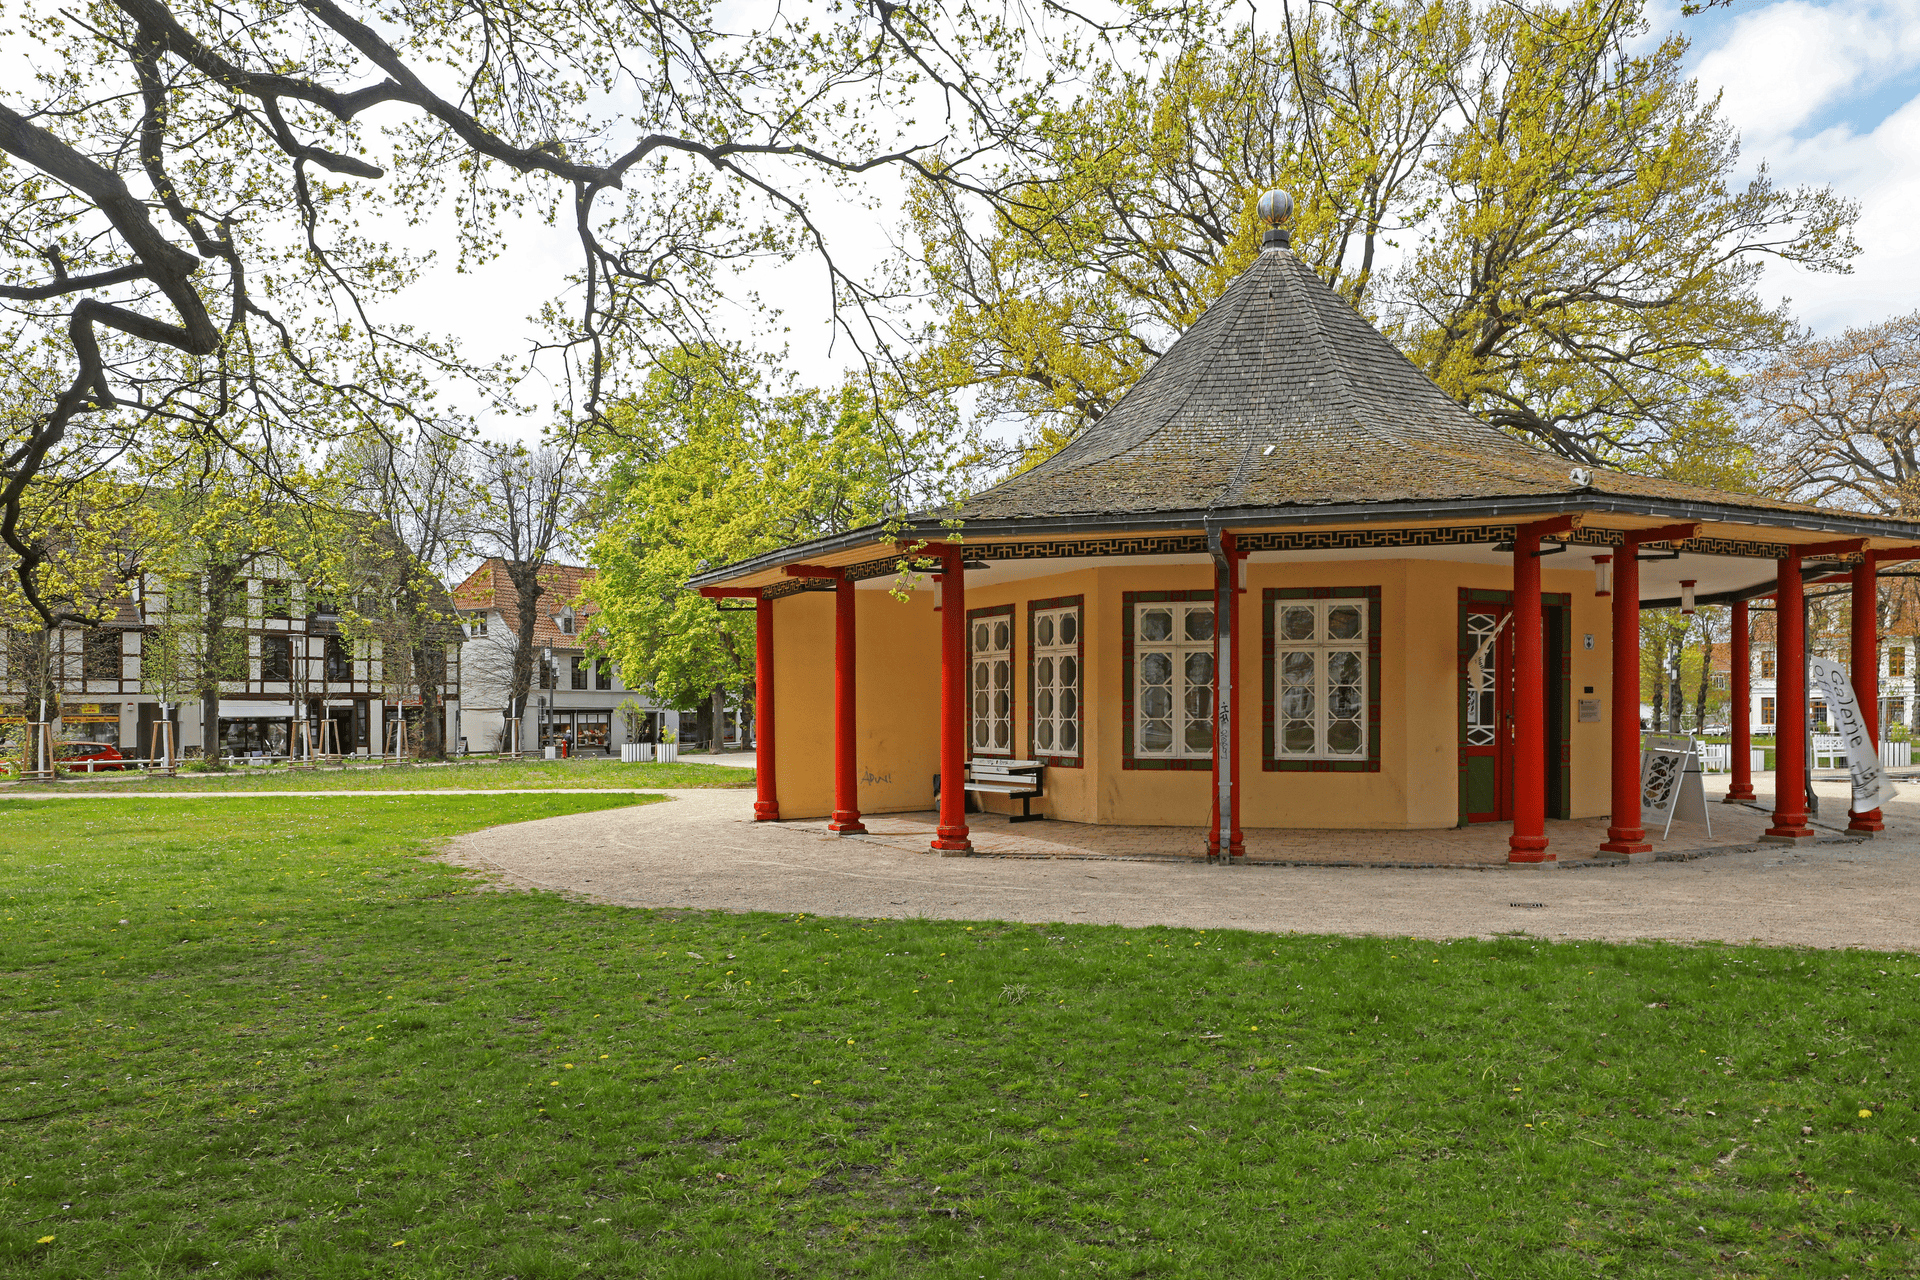 Roter Pavillion in Bad Doberan © TMV/Gohlke